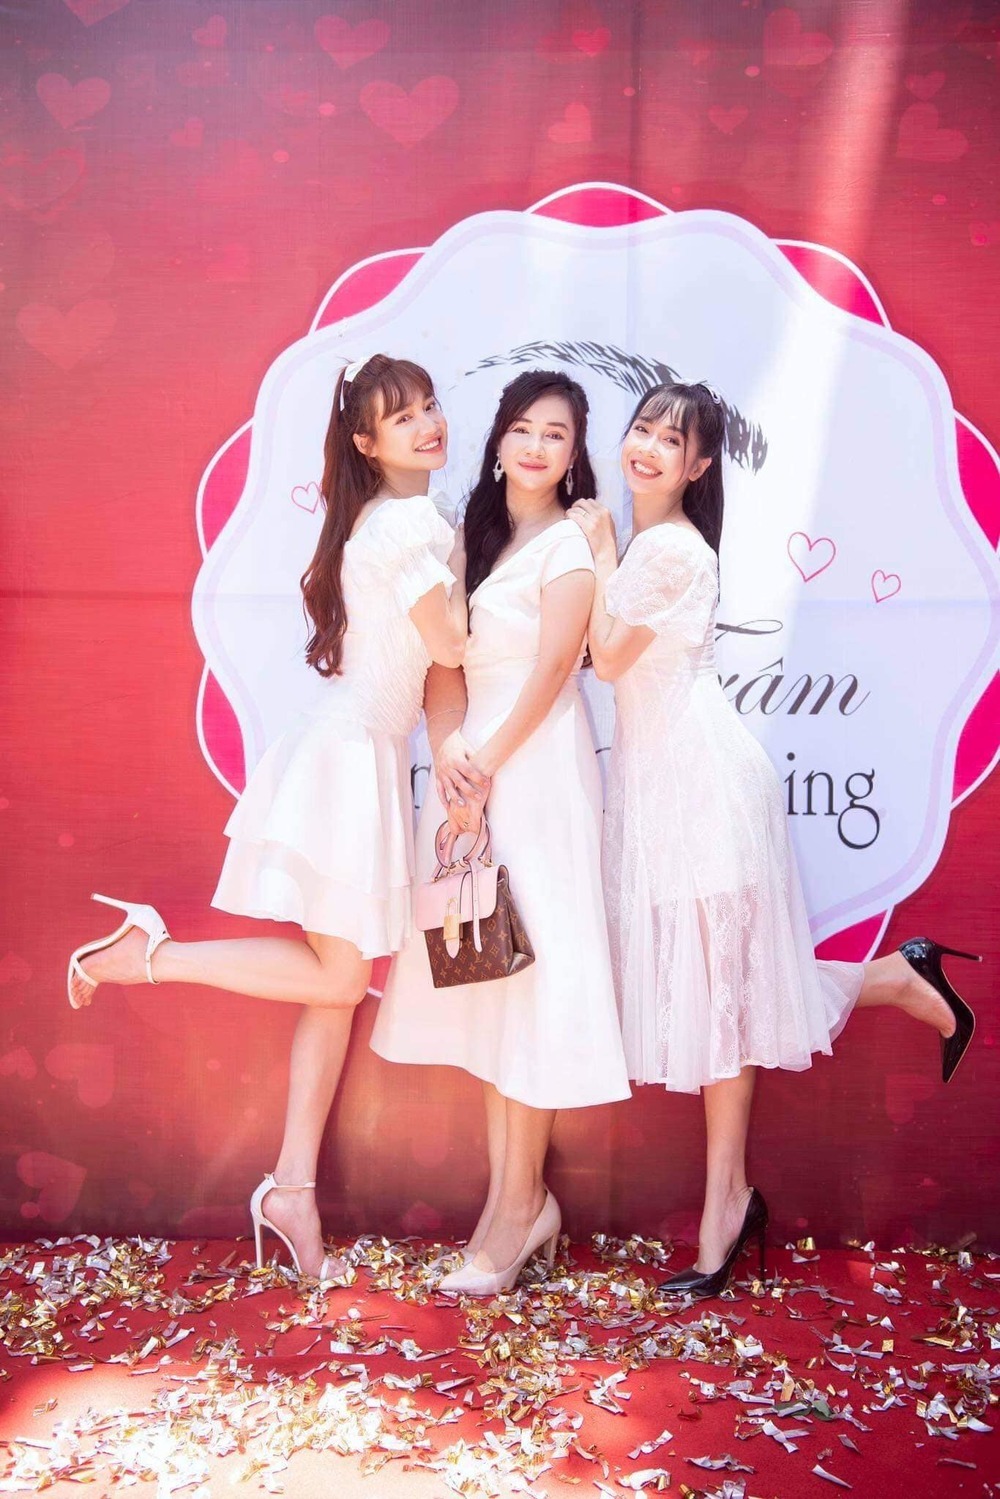 3 sao nữ Việt tên Phương: Nhà có các chị em gái xinh đẹp lại tài giỏi